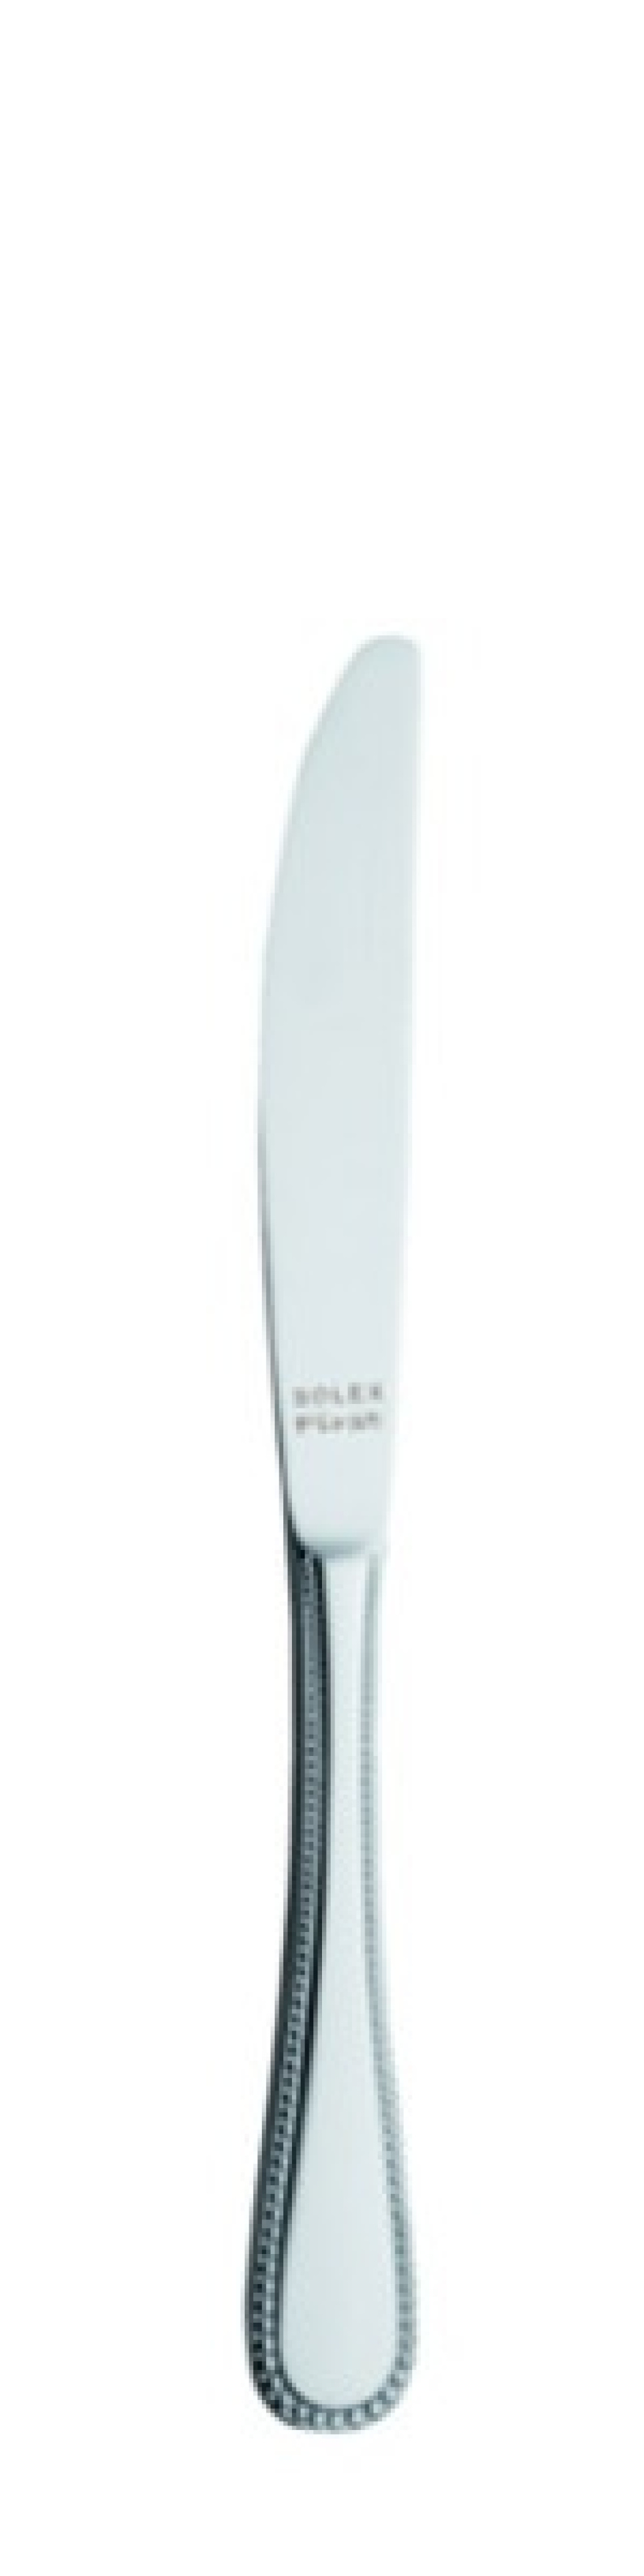 Perle Bordskniv 226 mm - Solex i gruppen Dukning / Bestick / Knivar hos The Kitchen Lab (1284-21422)